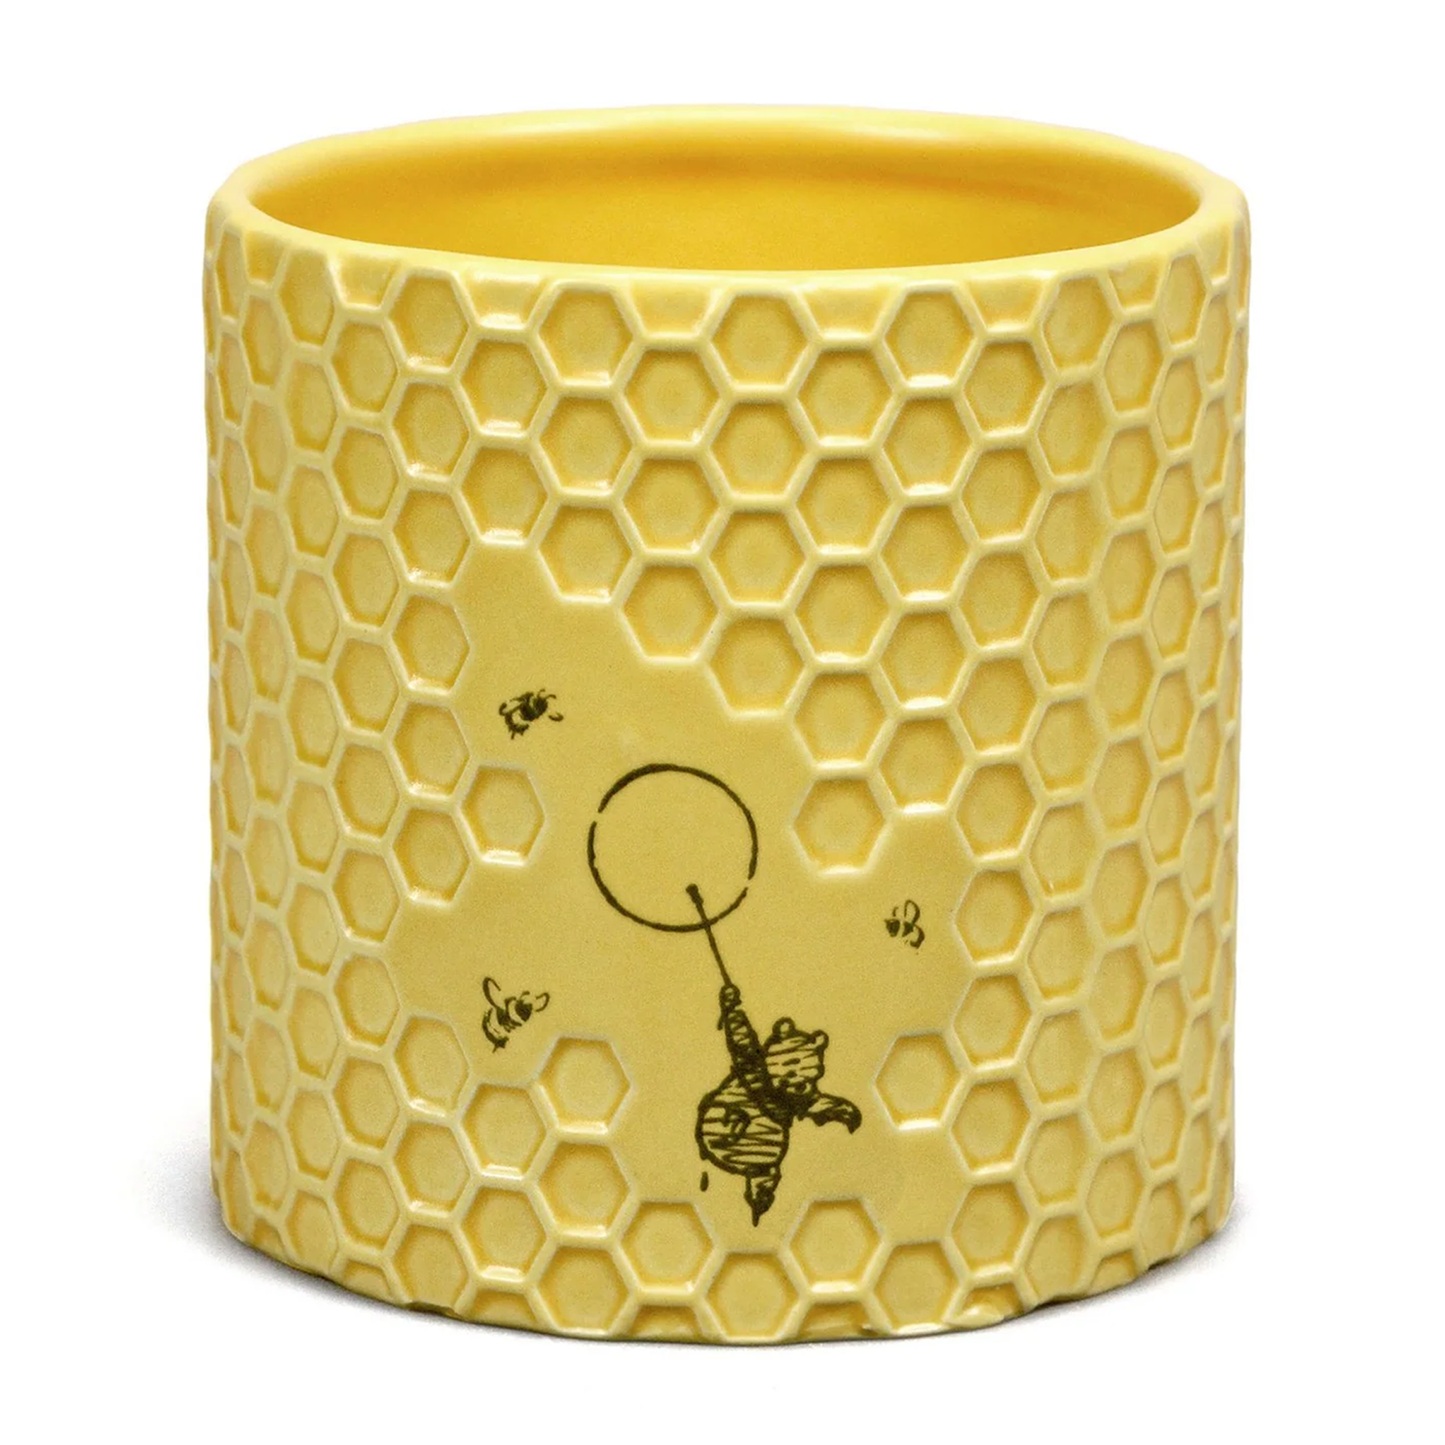 Winnie the Pooh Honey Comb Design Plant / Pen Pot | Happy Piranha